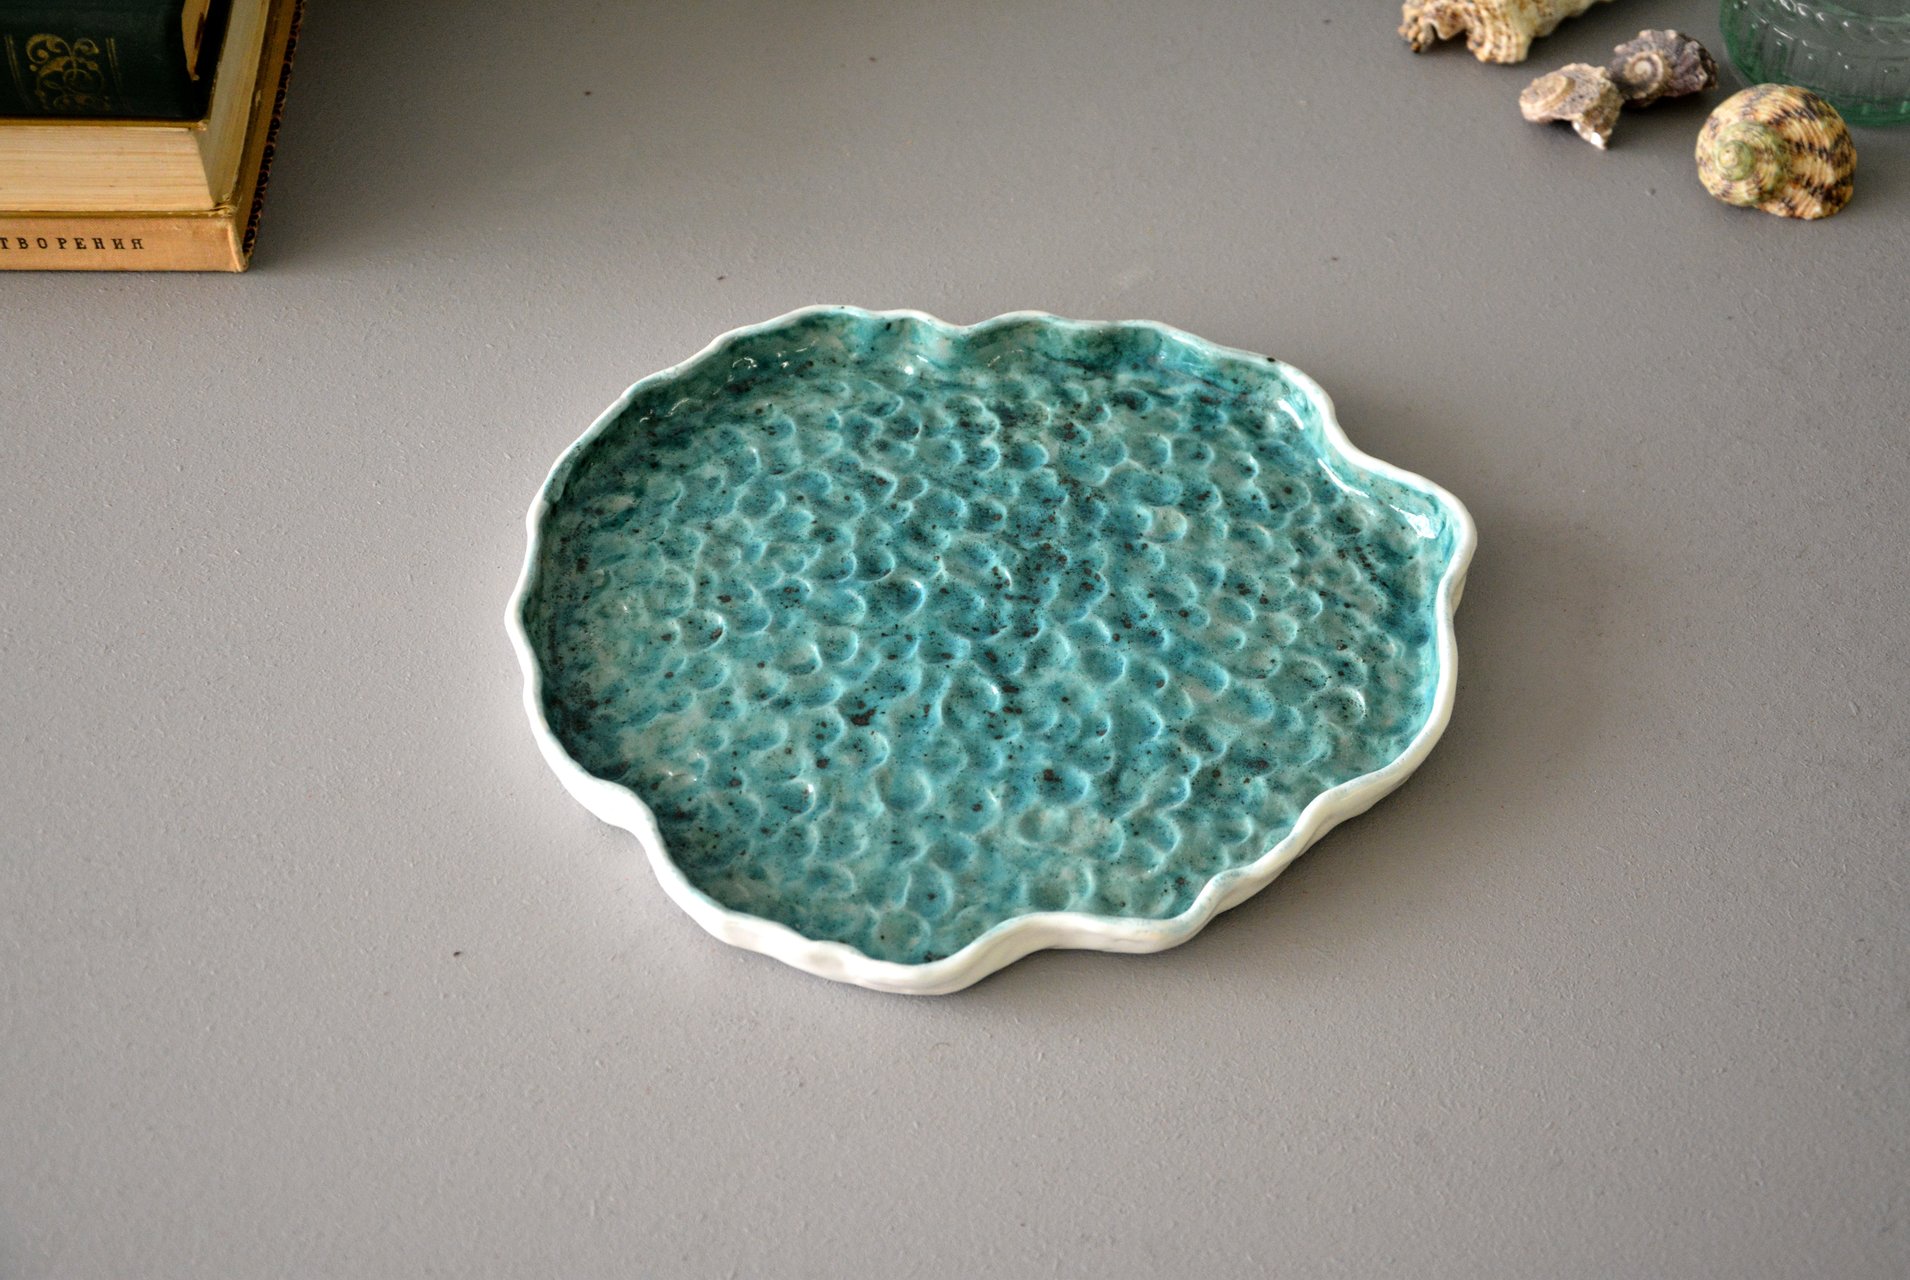 Кусочек моря - Керамические тарелки, 23 * 24,5 см, фото 2 из 4.